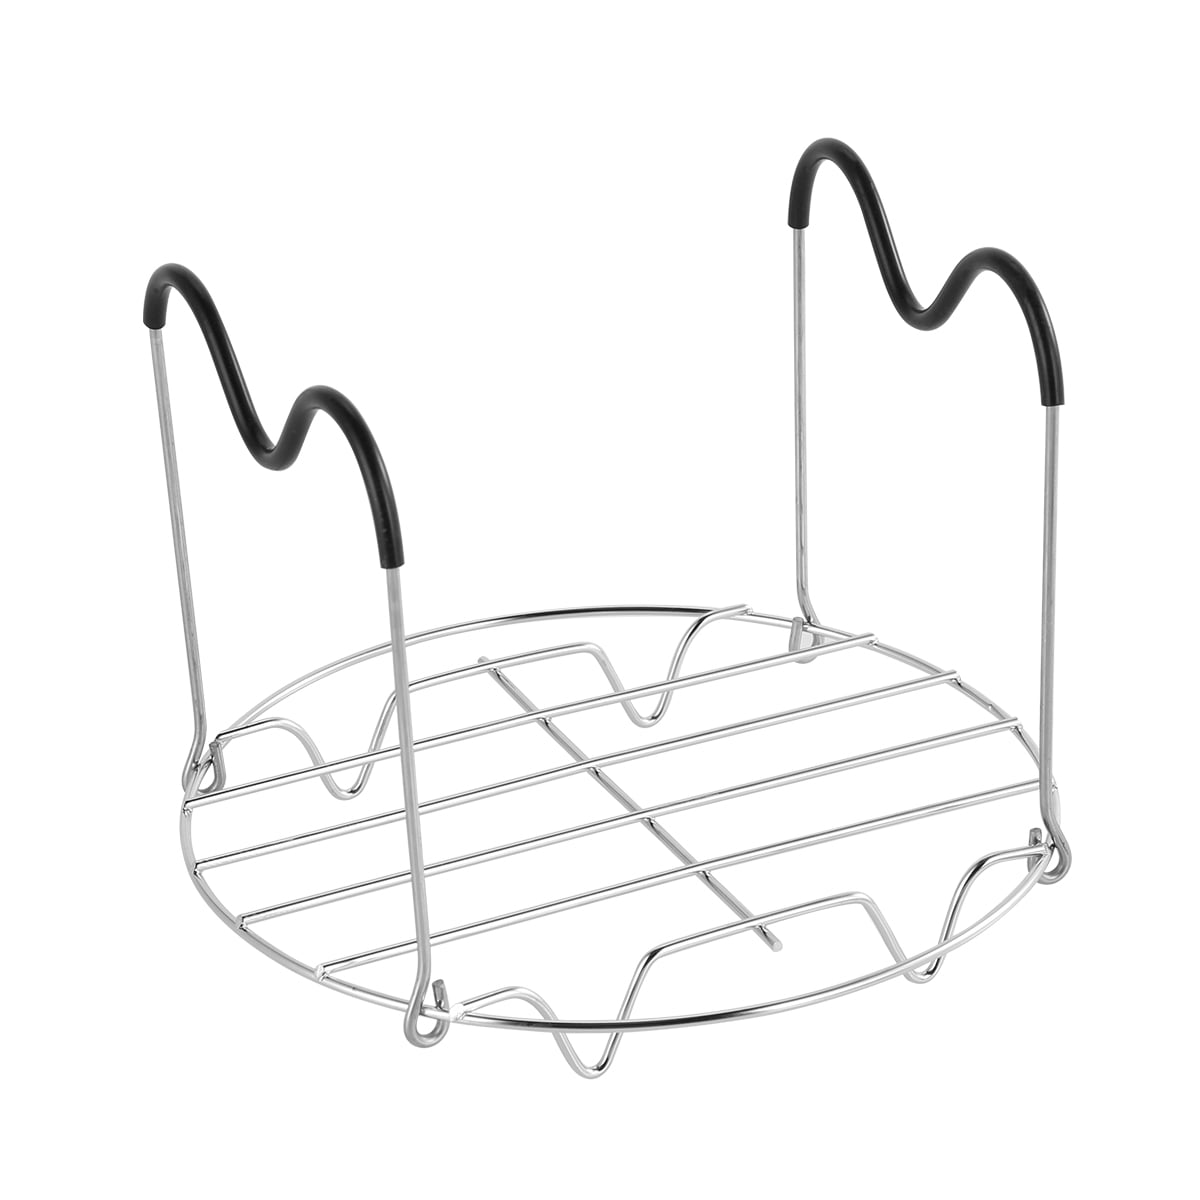 Jytue Stainless Steel Steamer Basket with Egg Steam Rack Trivet